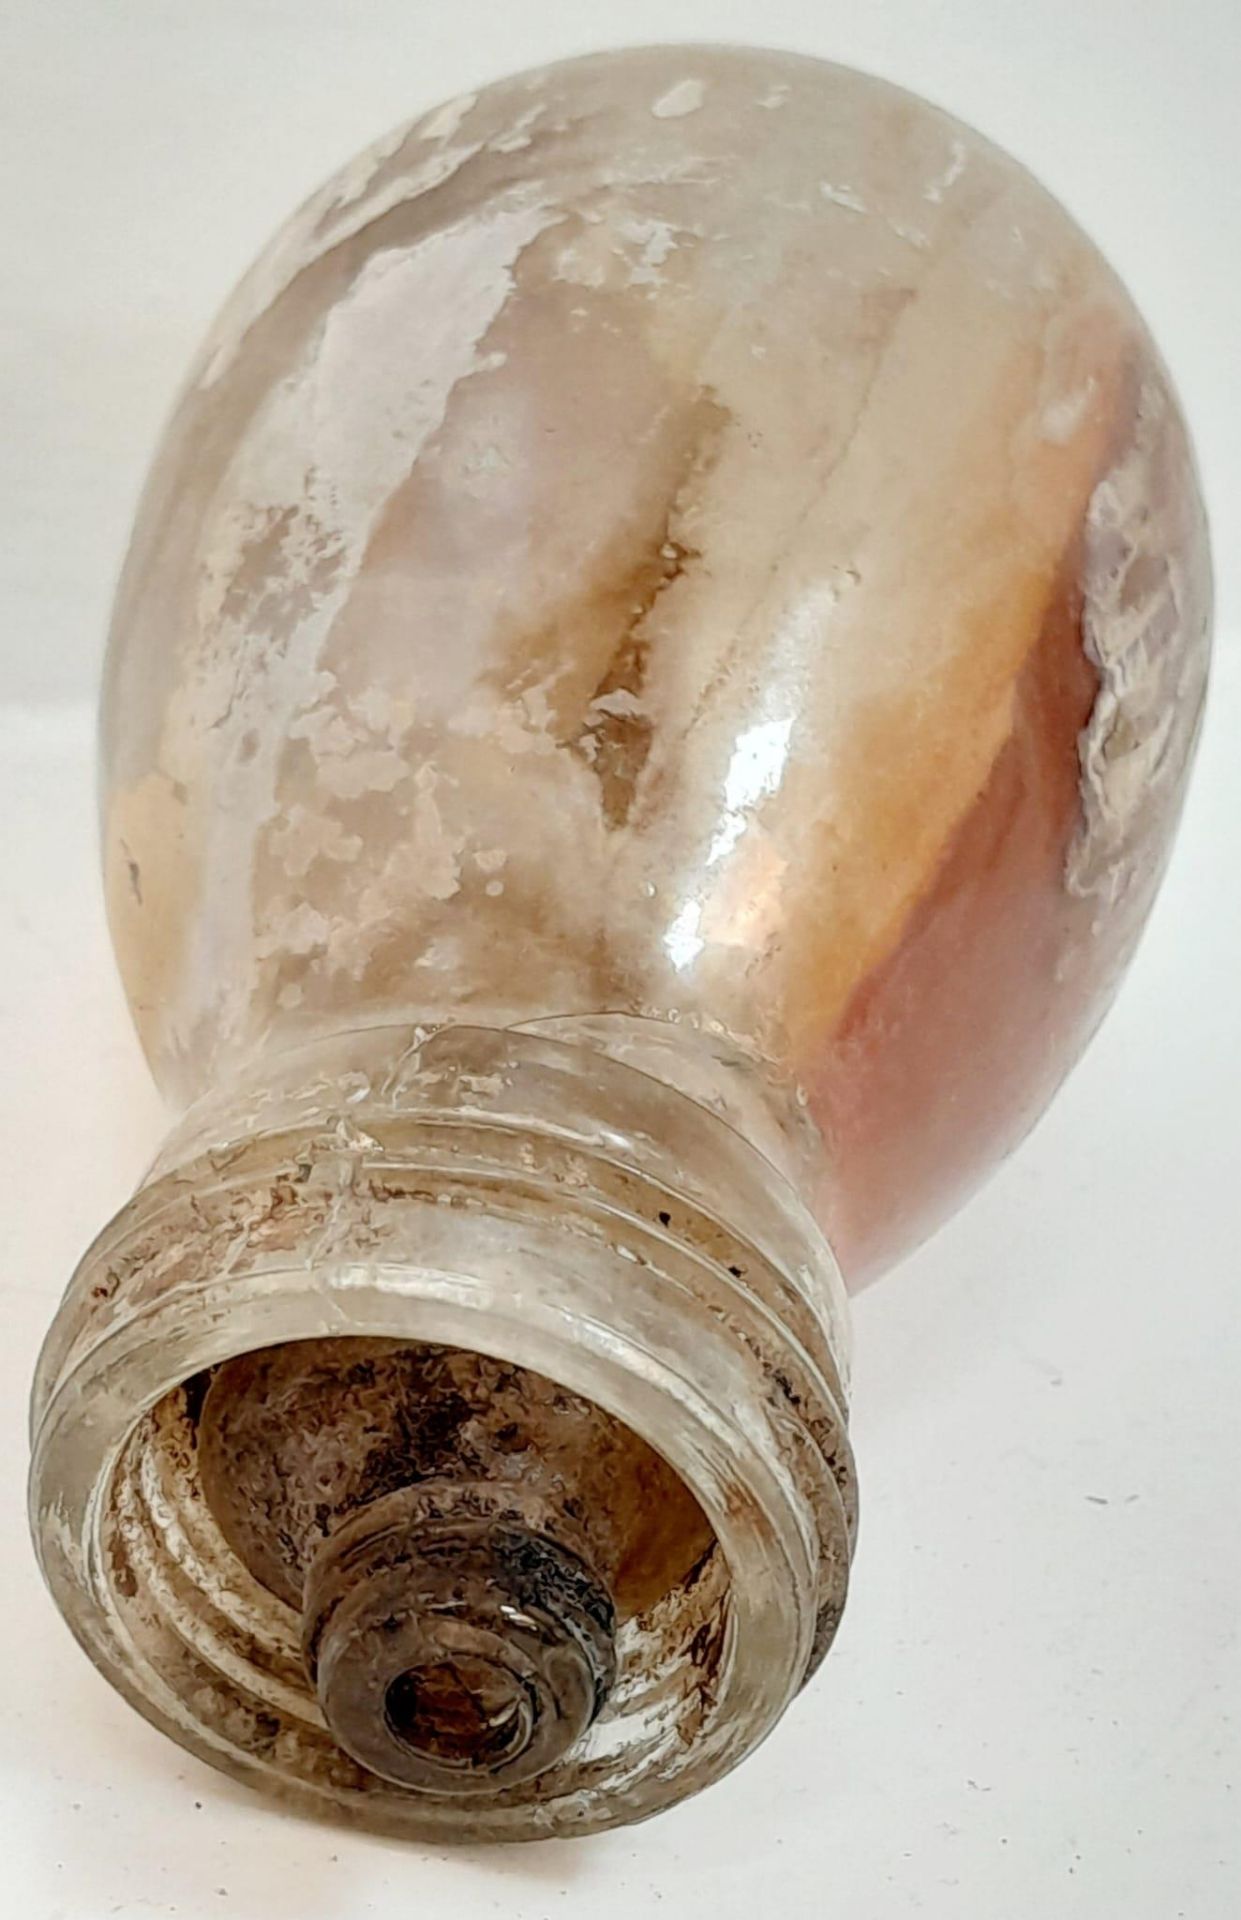 WW2 German Inert Blendkorper Glass Smoke Grenade. Has Inner Capsule in Place. This Grenade used to - Image 3 of 4